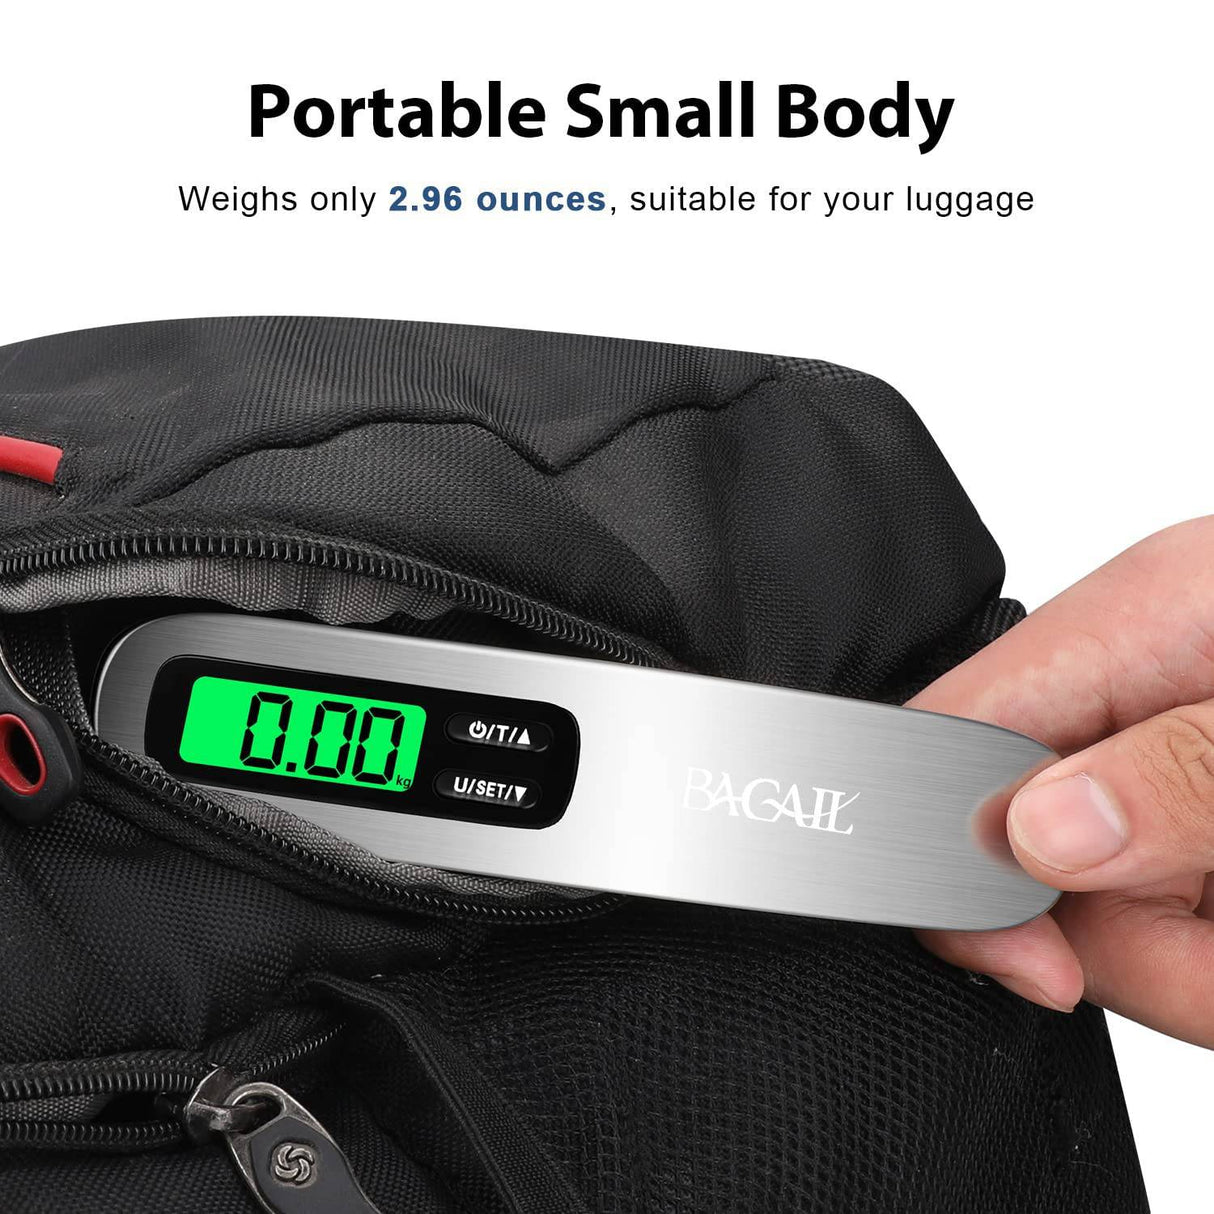  BROMECH Báscula digital de equipaje, báscula de equipaje  colgante de 110 libras, báscula de pesaje portátil de maleta de acero  inoxidable, báscula de peso de equipaje de viaje con gancho, correas